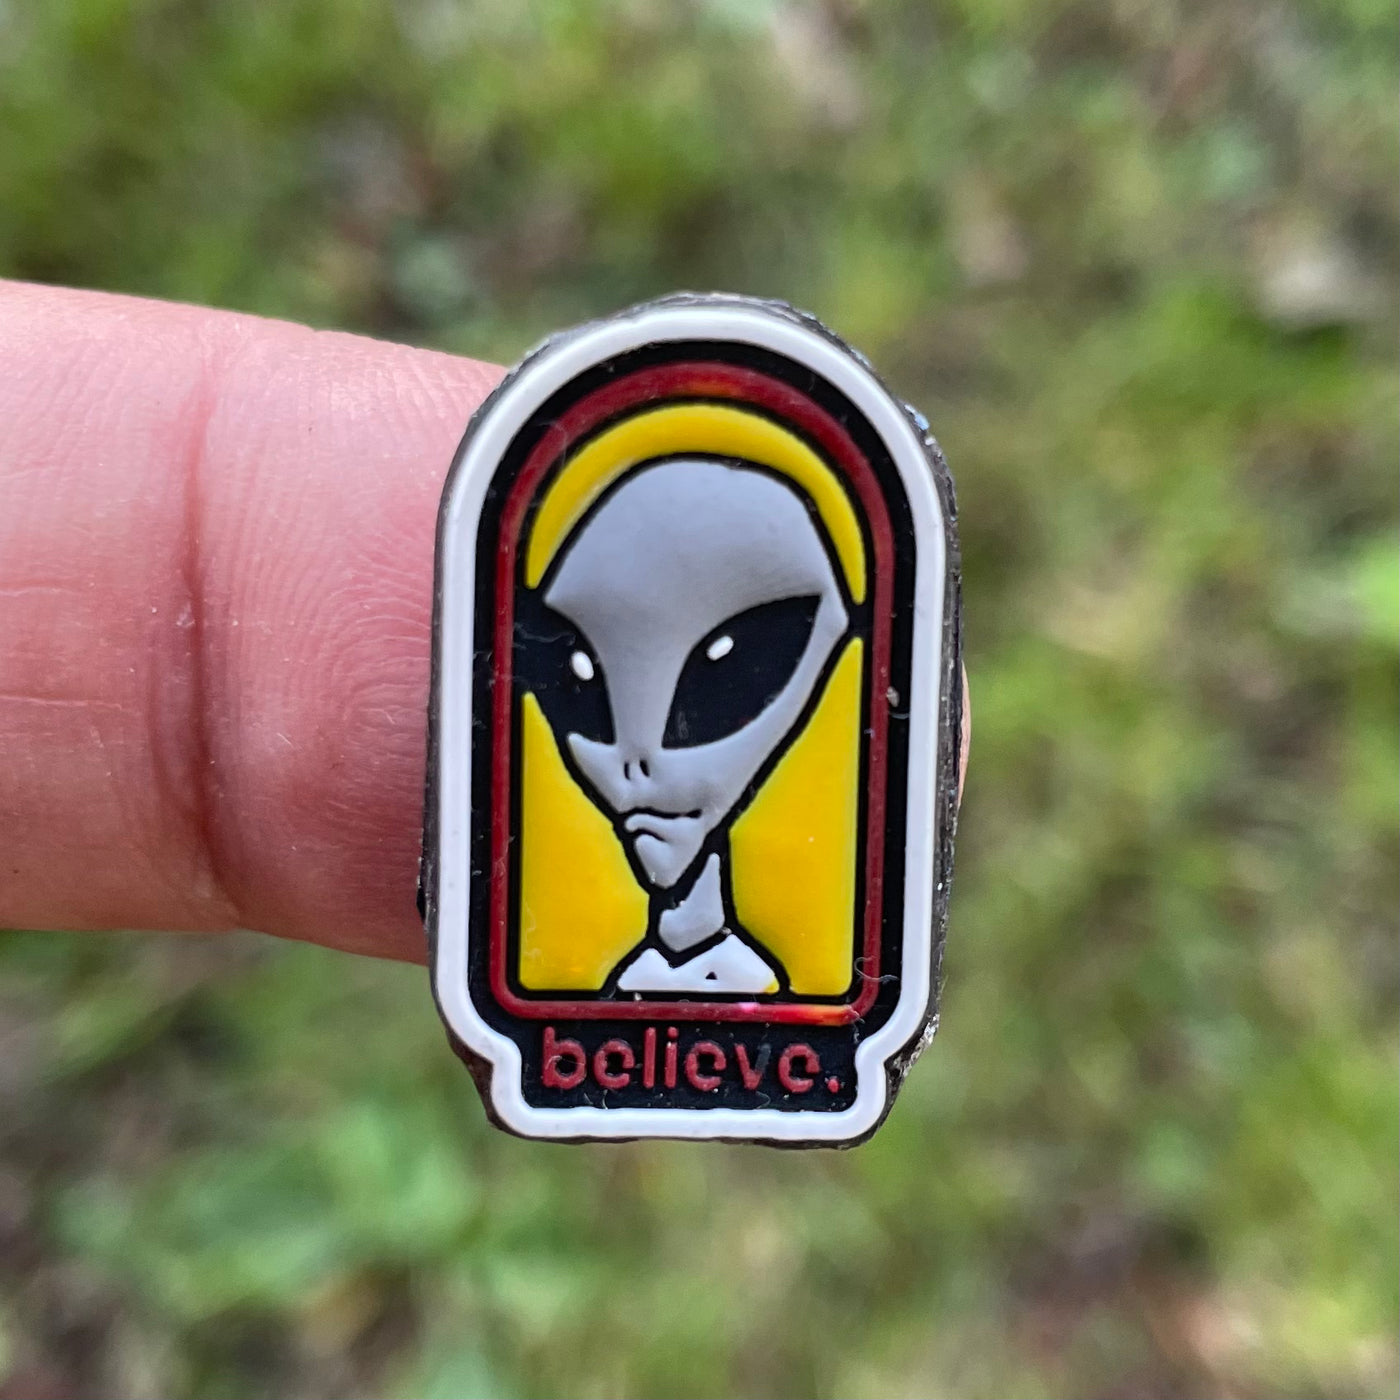 Believe in aliens - PVC patch